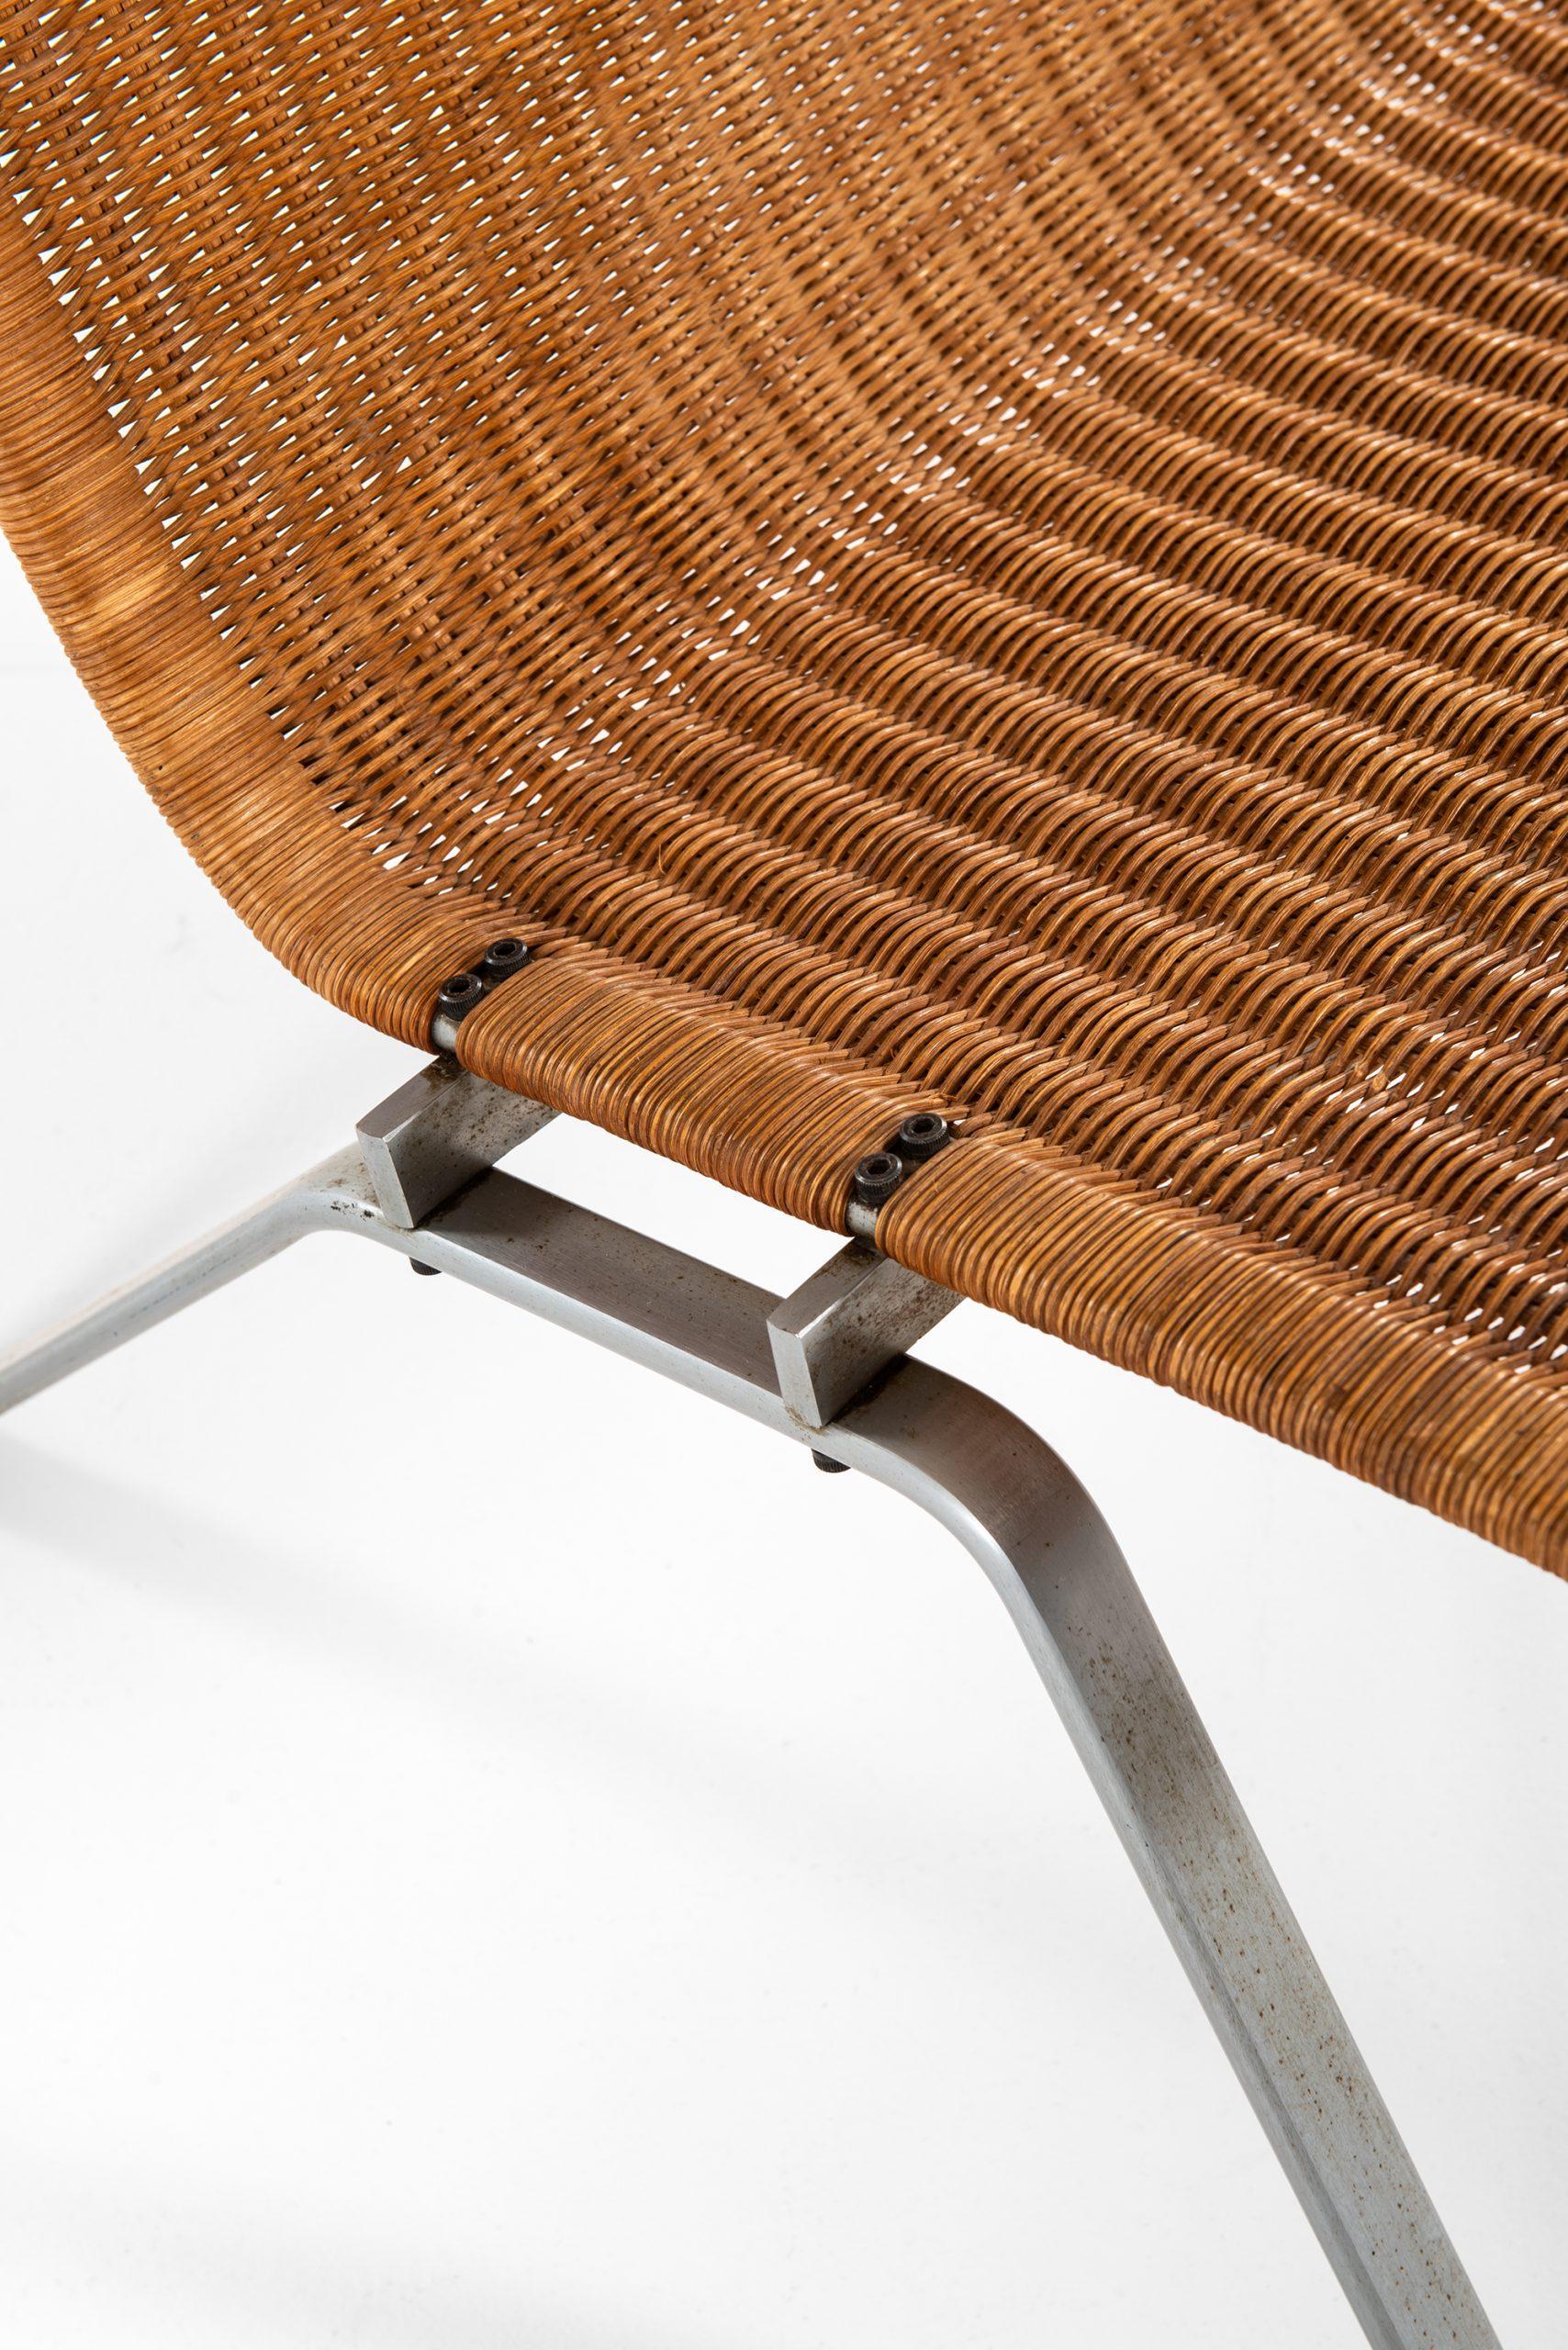 Rare pair of easy chairs model PK-22 designed by Poul Kjærholm. Produced by E. Kold Christensen in Denmark.